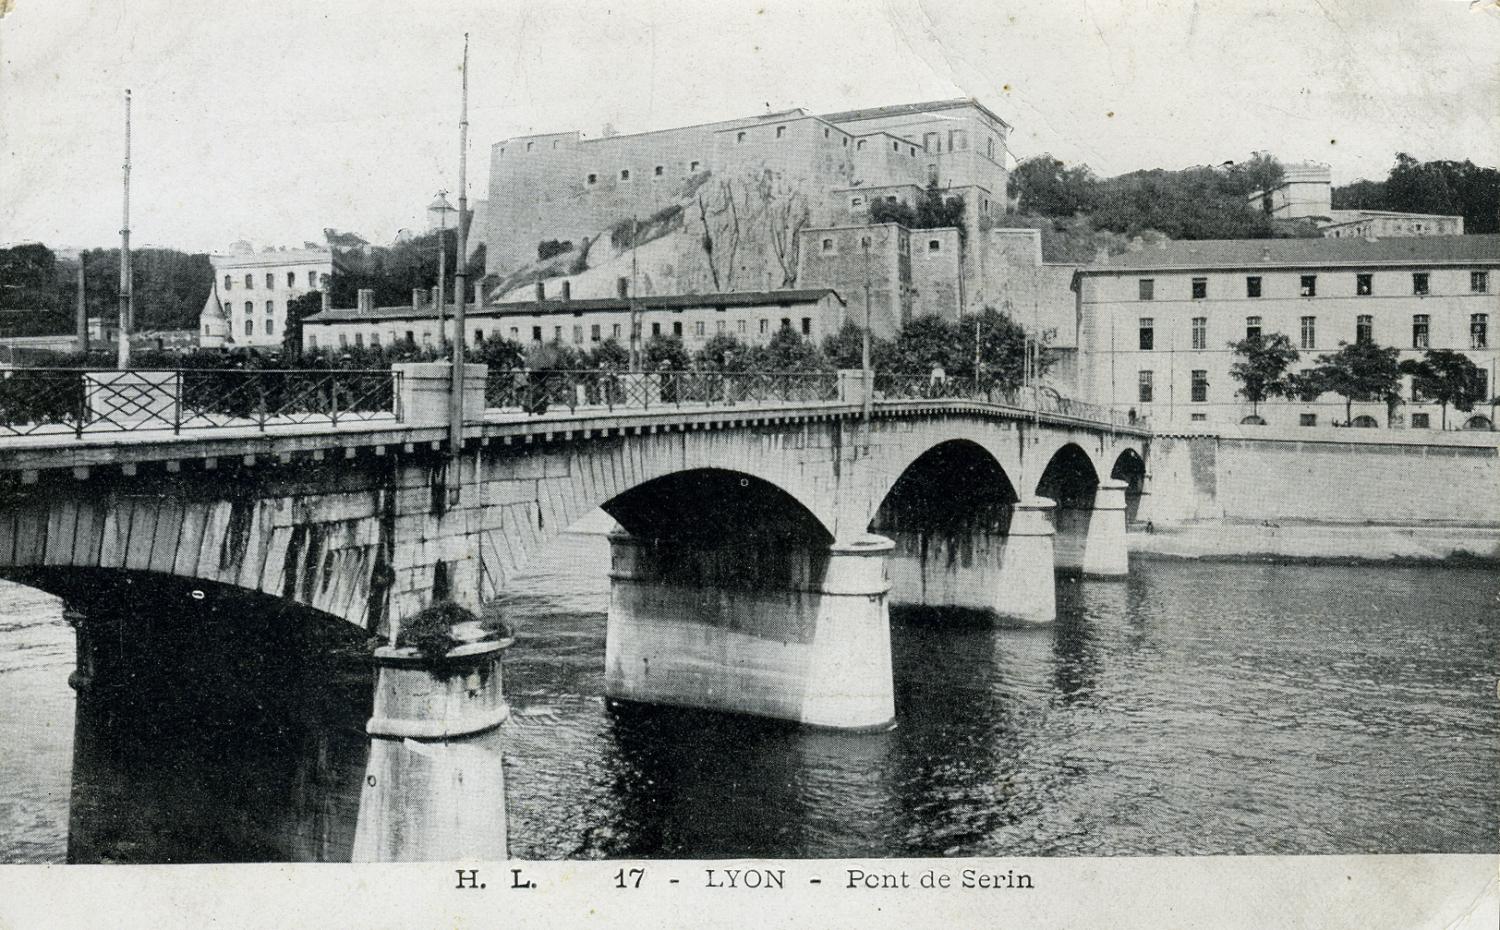 LYON - Pont de Serin